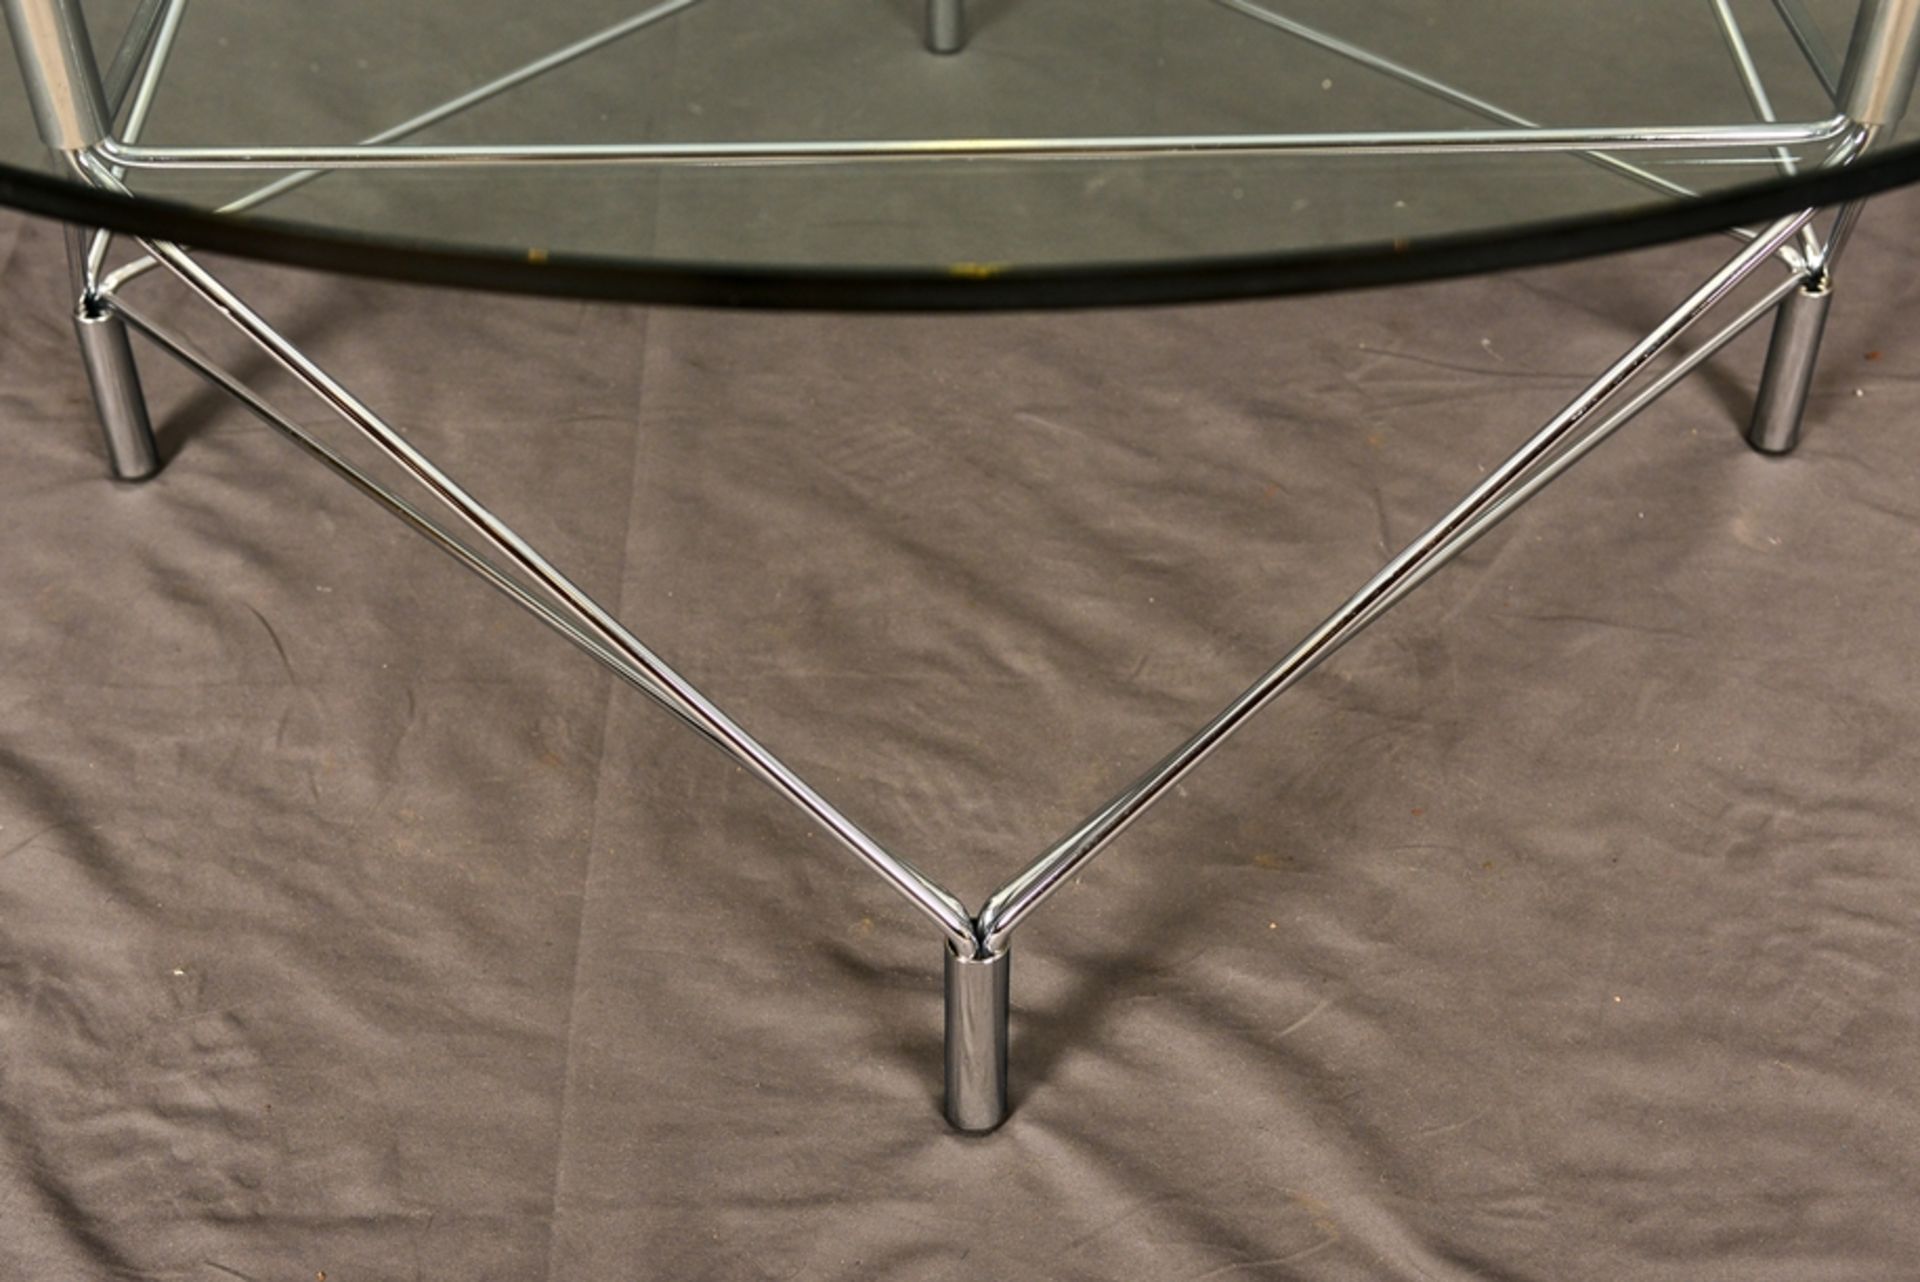 Couchtisch. Verchromtes Rohrgestänge mit aufliegender, farbloser, runder Glasplatte. Höhe ca. 45 cm, - Bild 2 aus 2